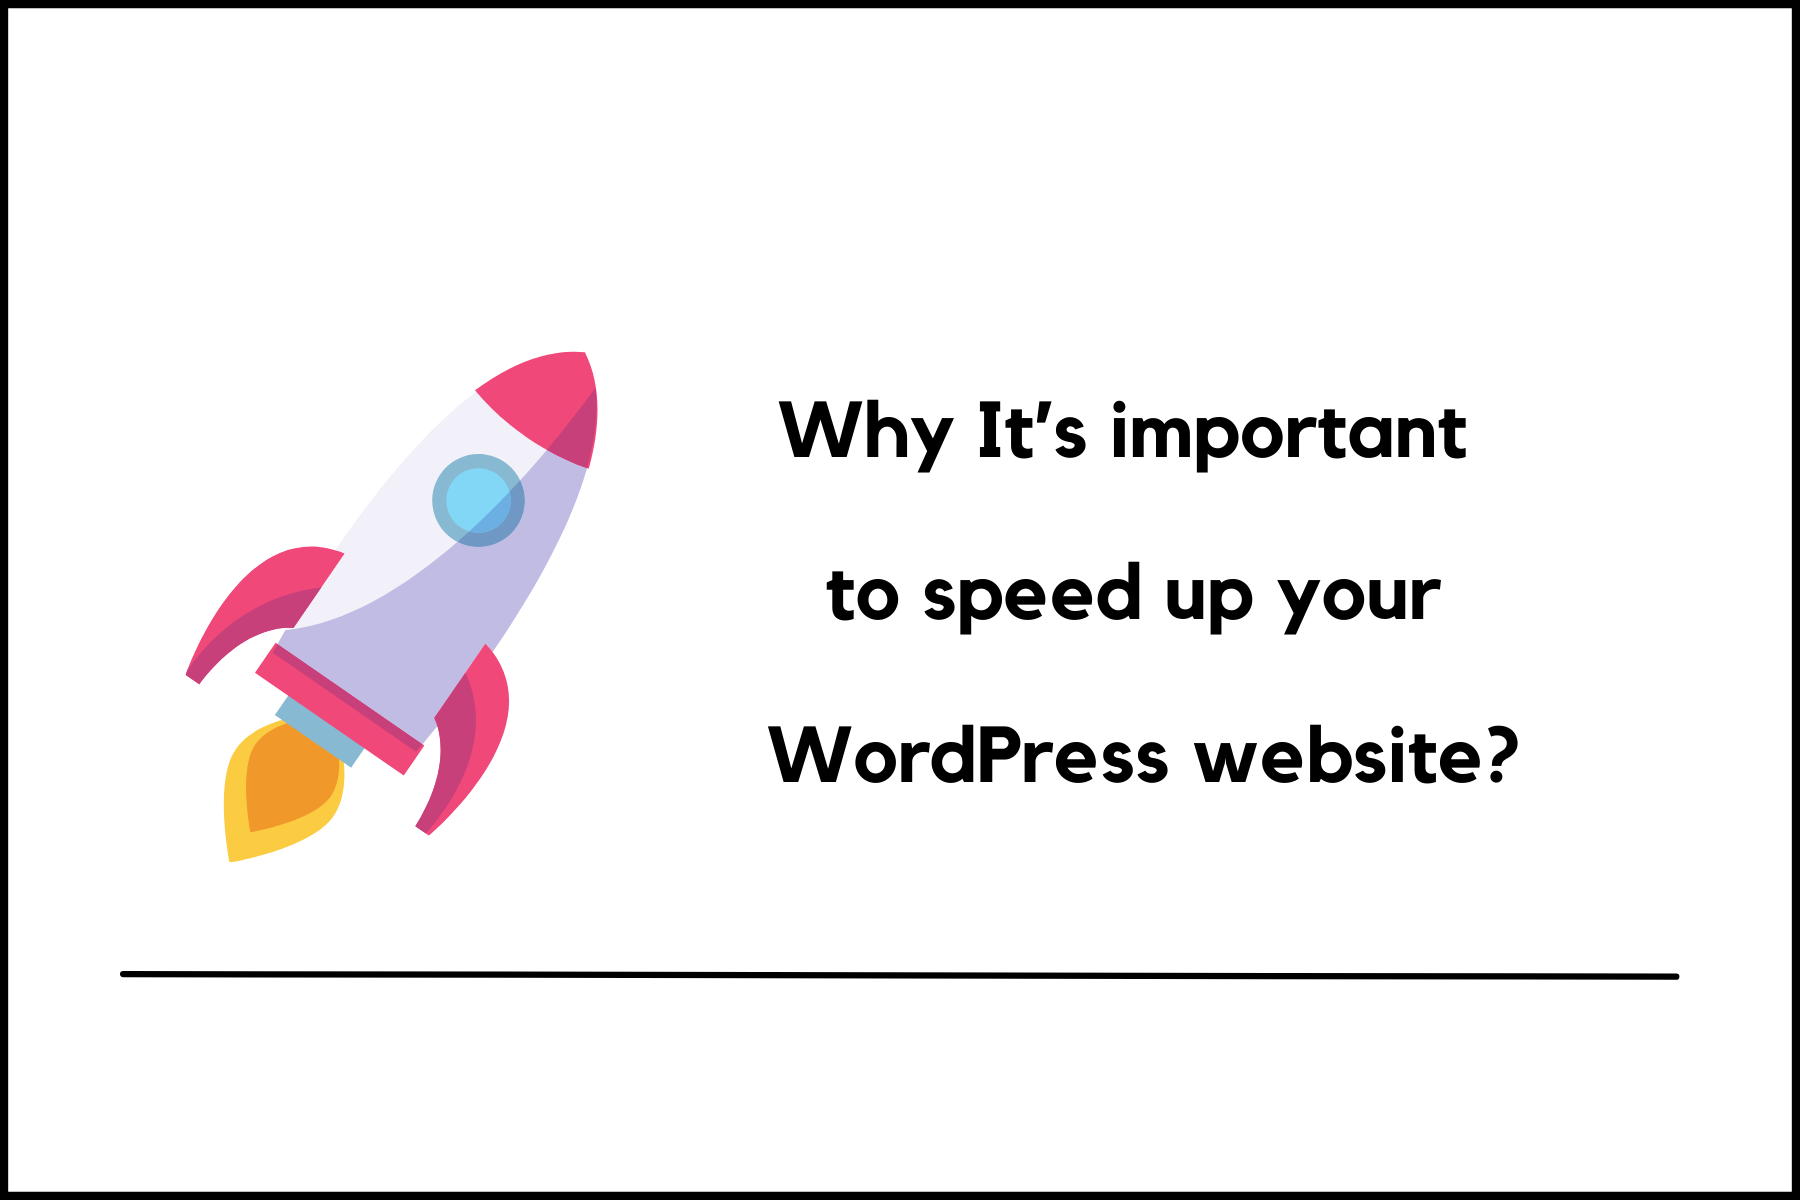 Speed up your wordpress website